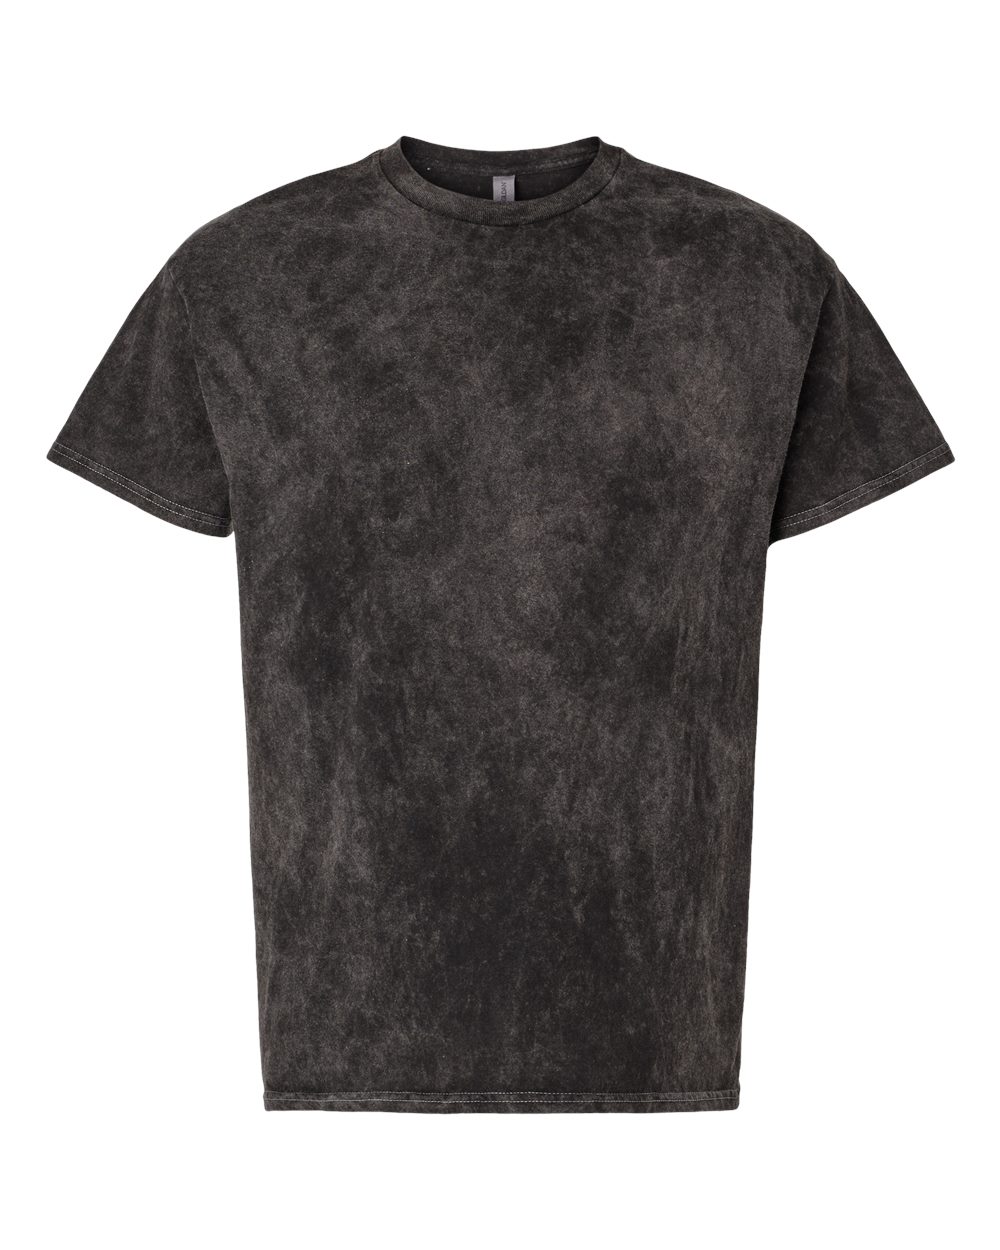 Dyenomite-Tie-Dyed T-Shirt- Black Mineral Wash